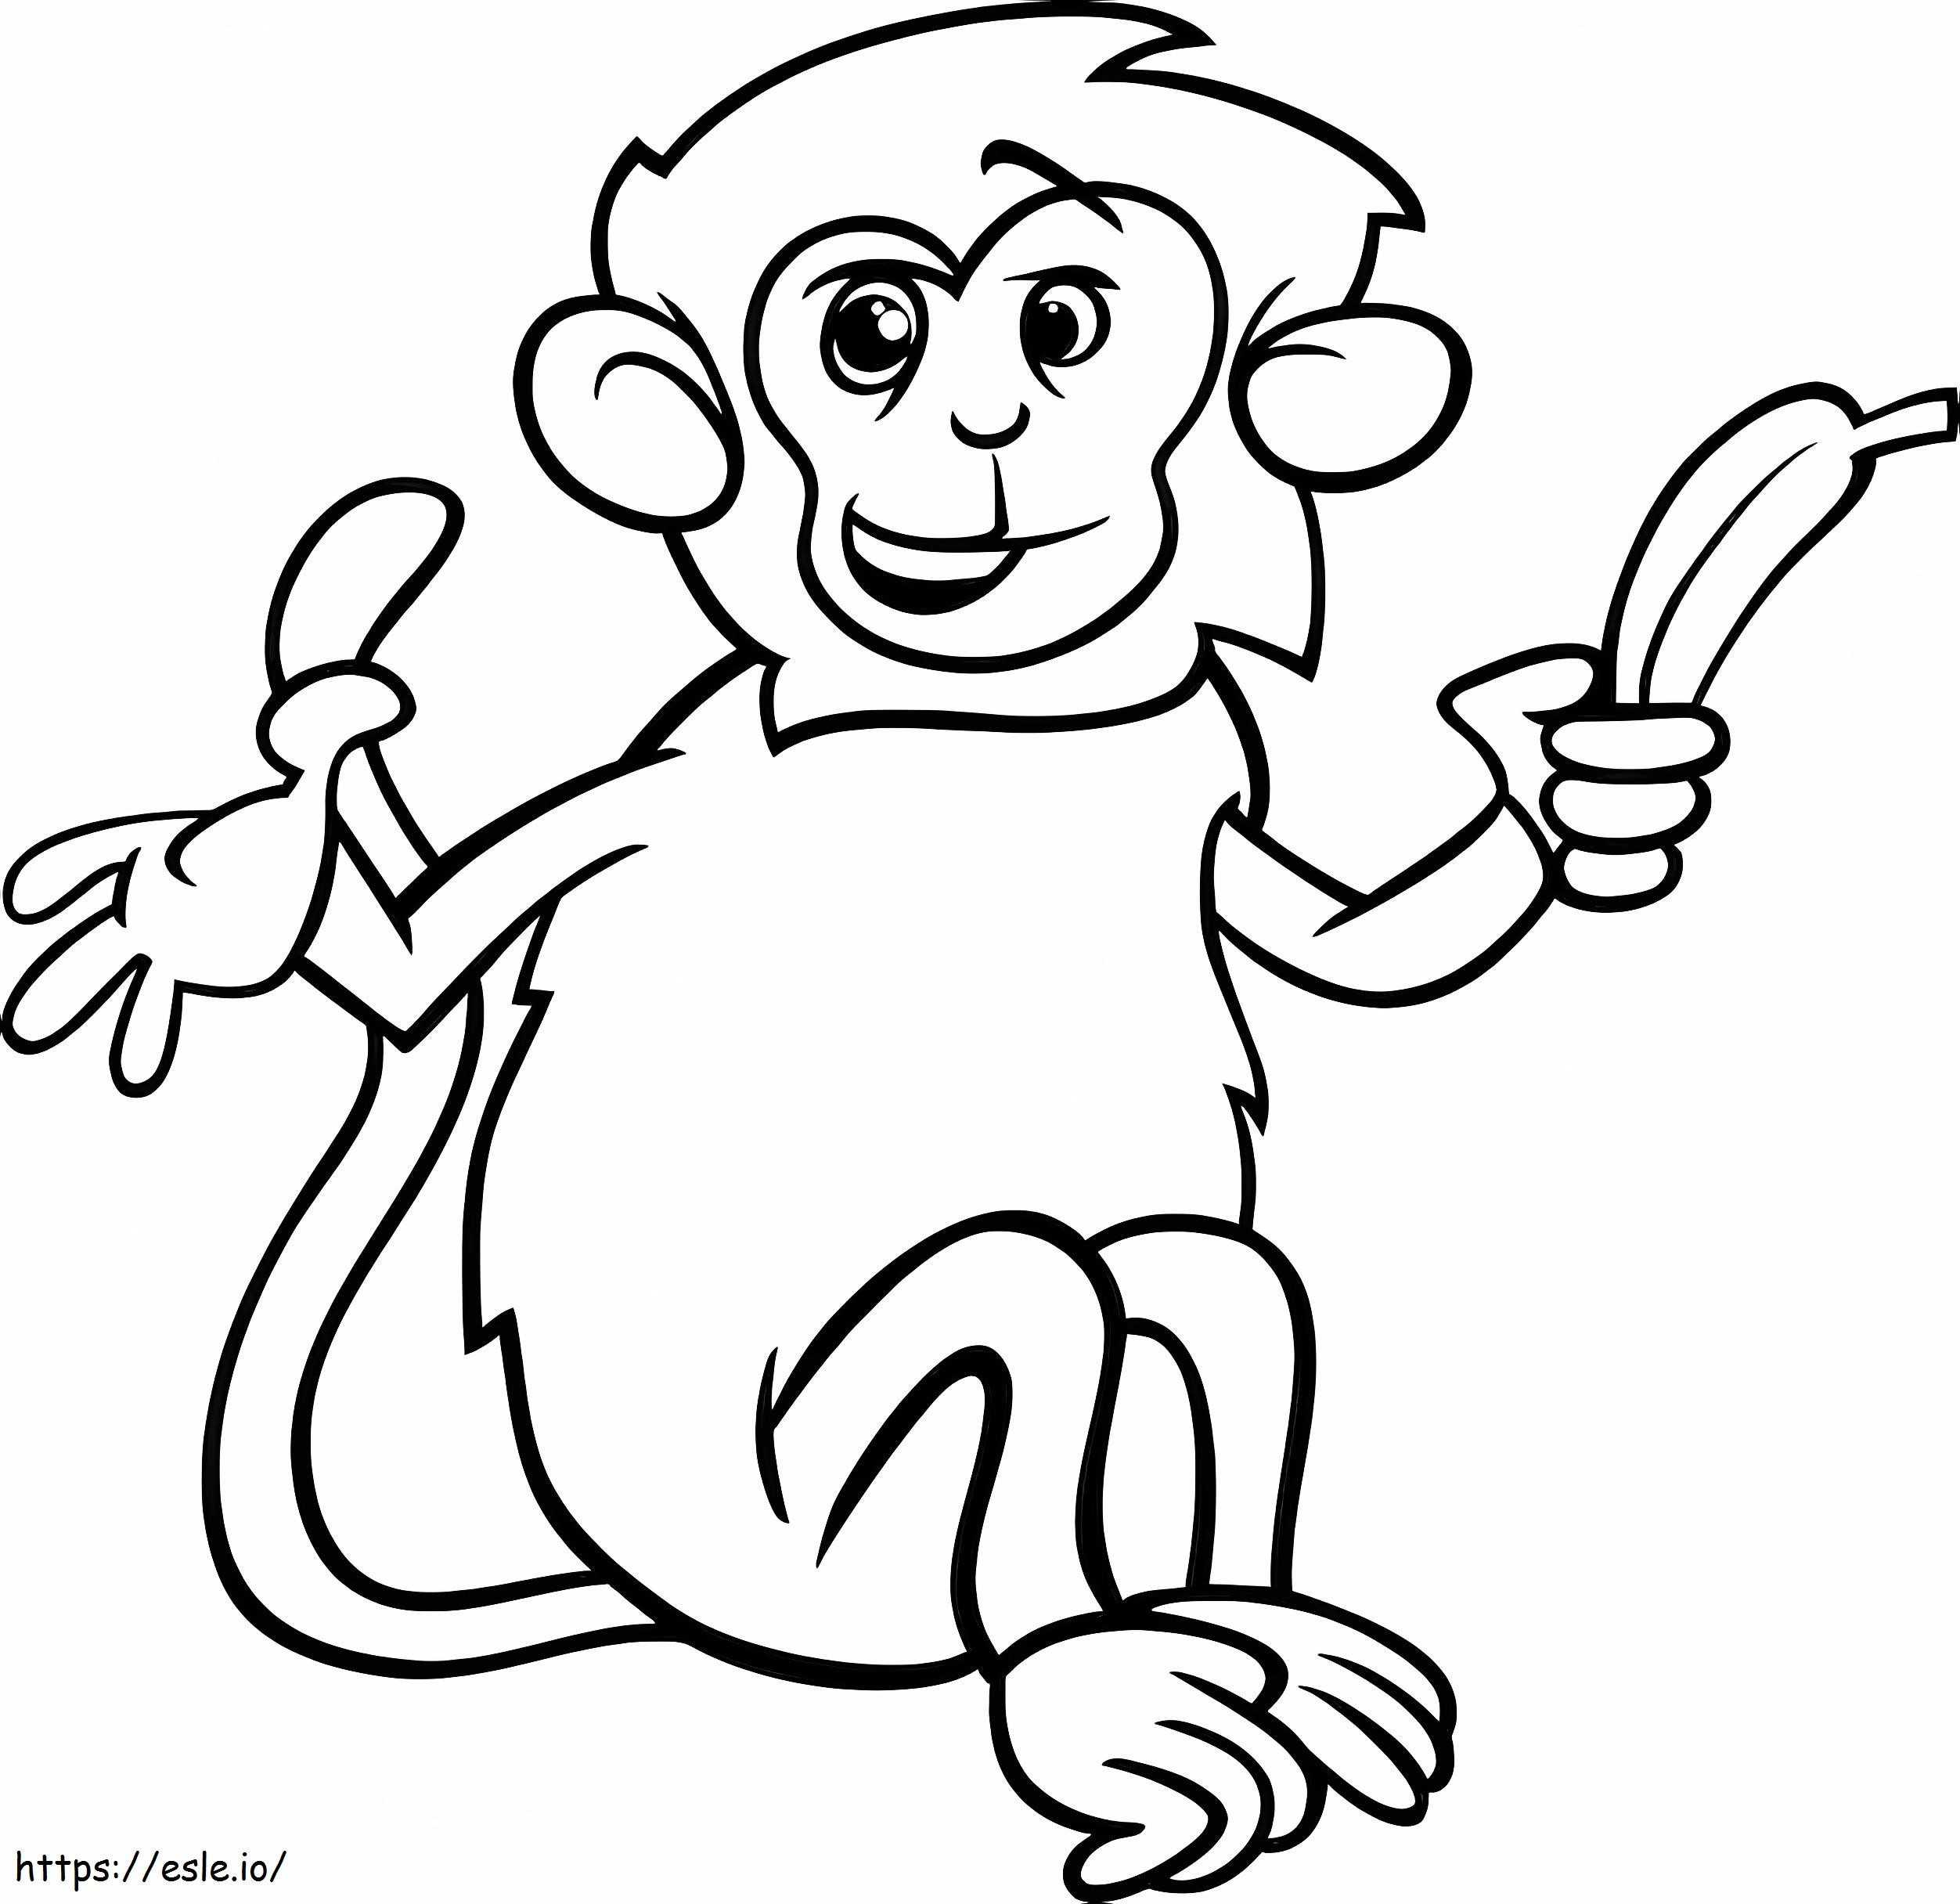 Śmieszna małpa z bananem 2 kolorowanka